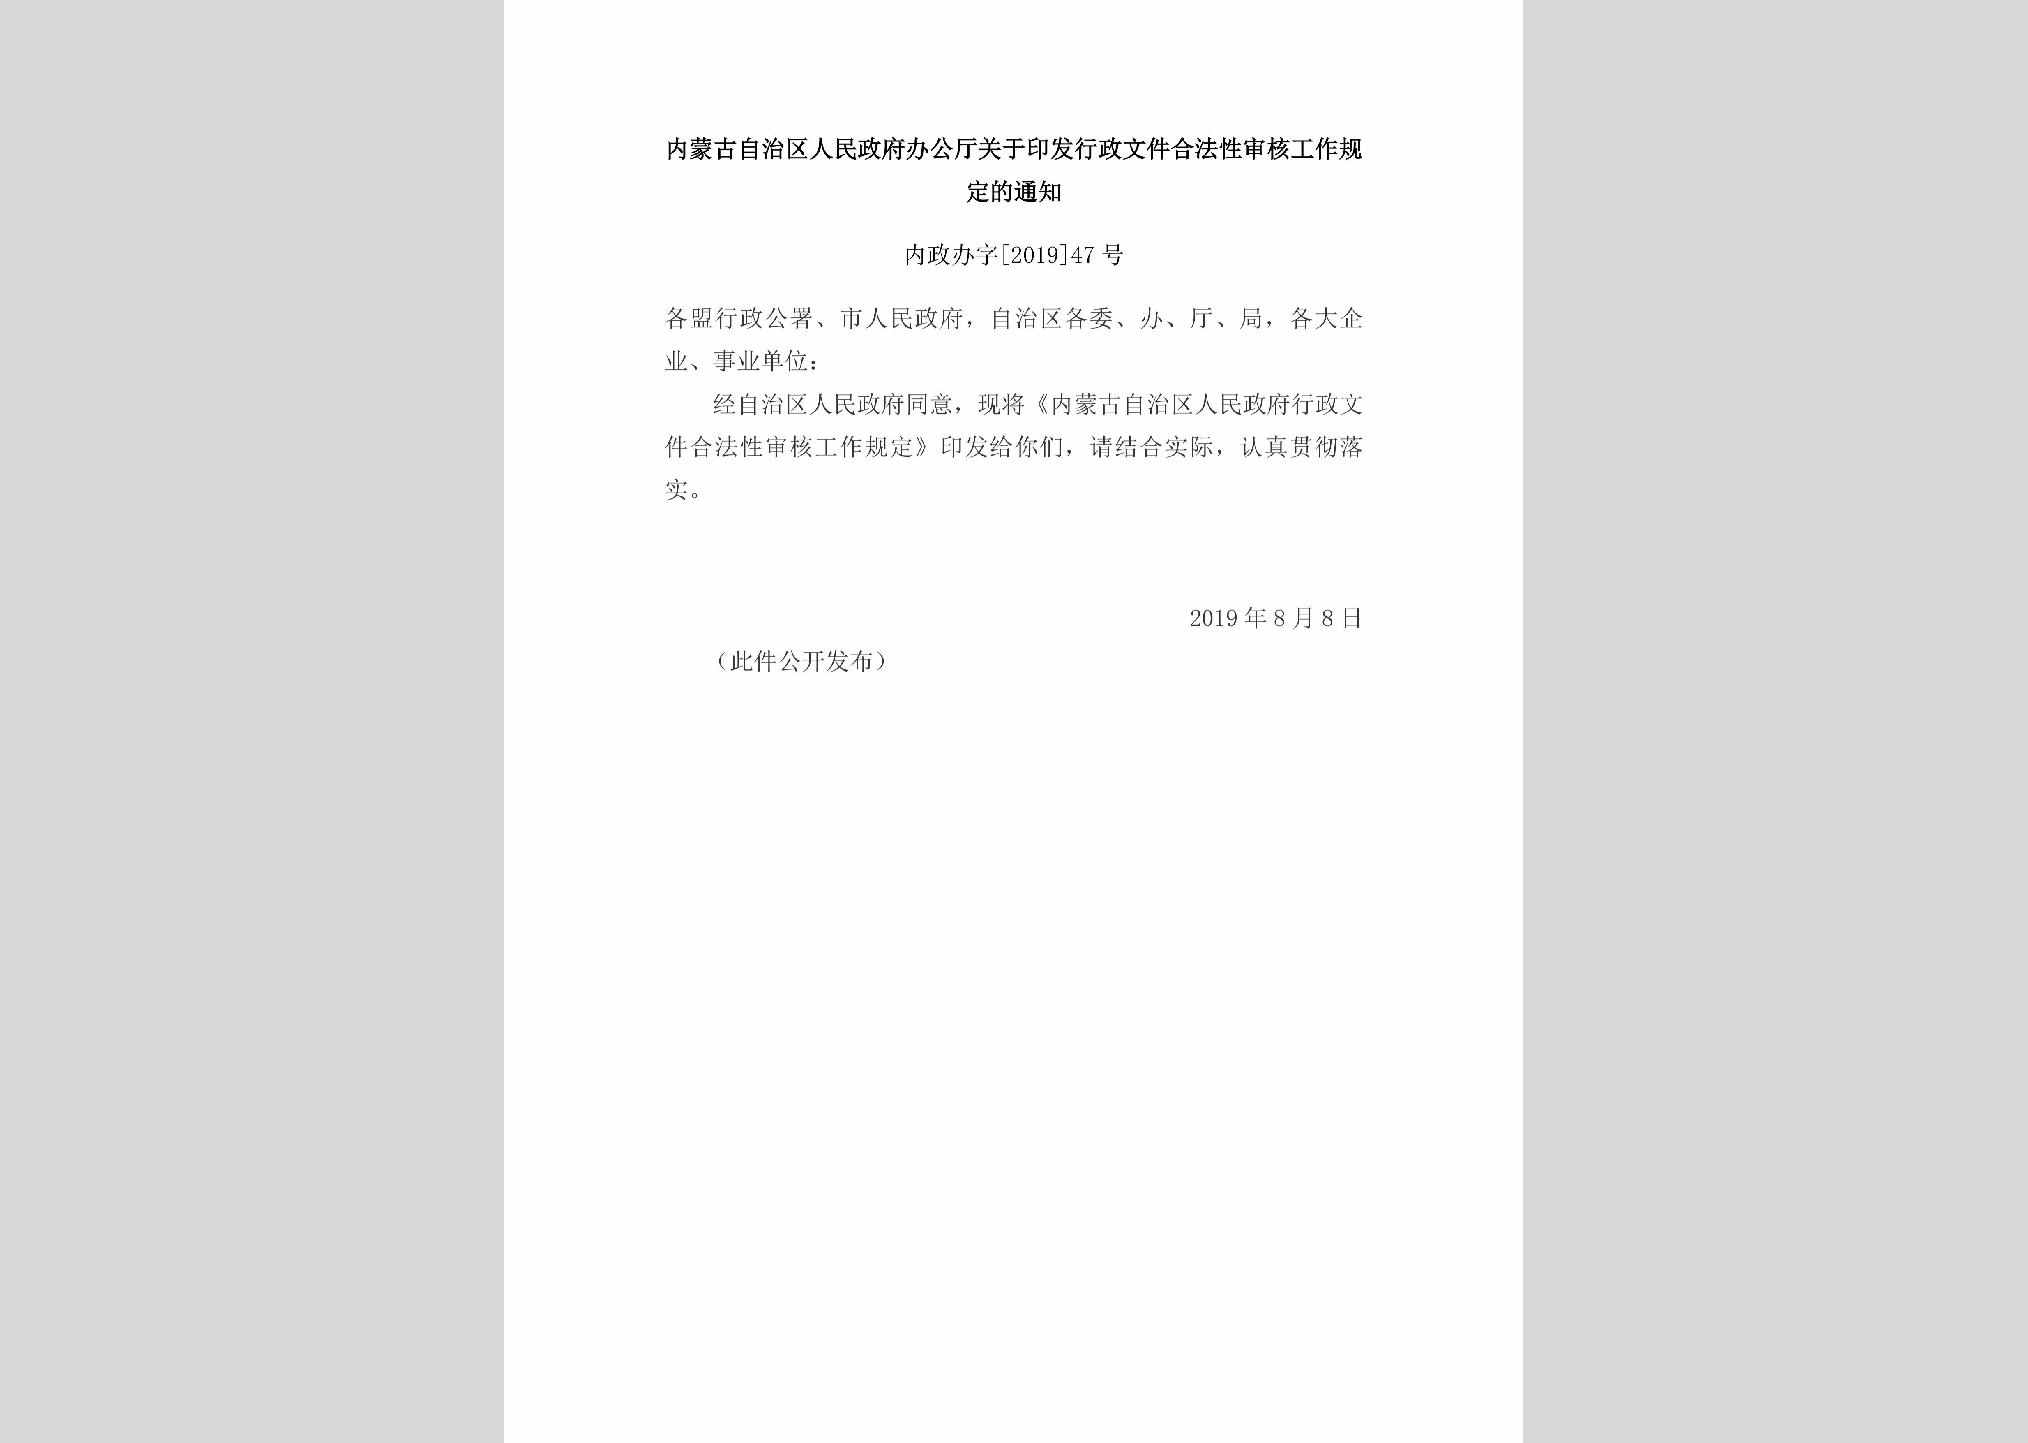 内政办字[2019]47号：内蒙古自治区人民政府办公厅关于印发行政文件合法性审核工作规定的通知